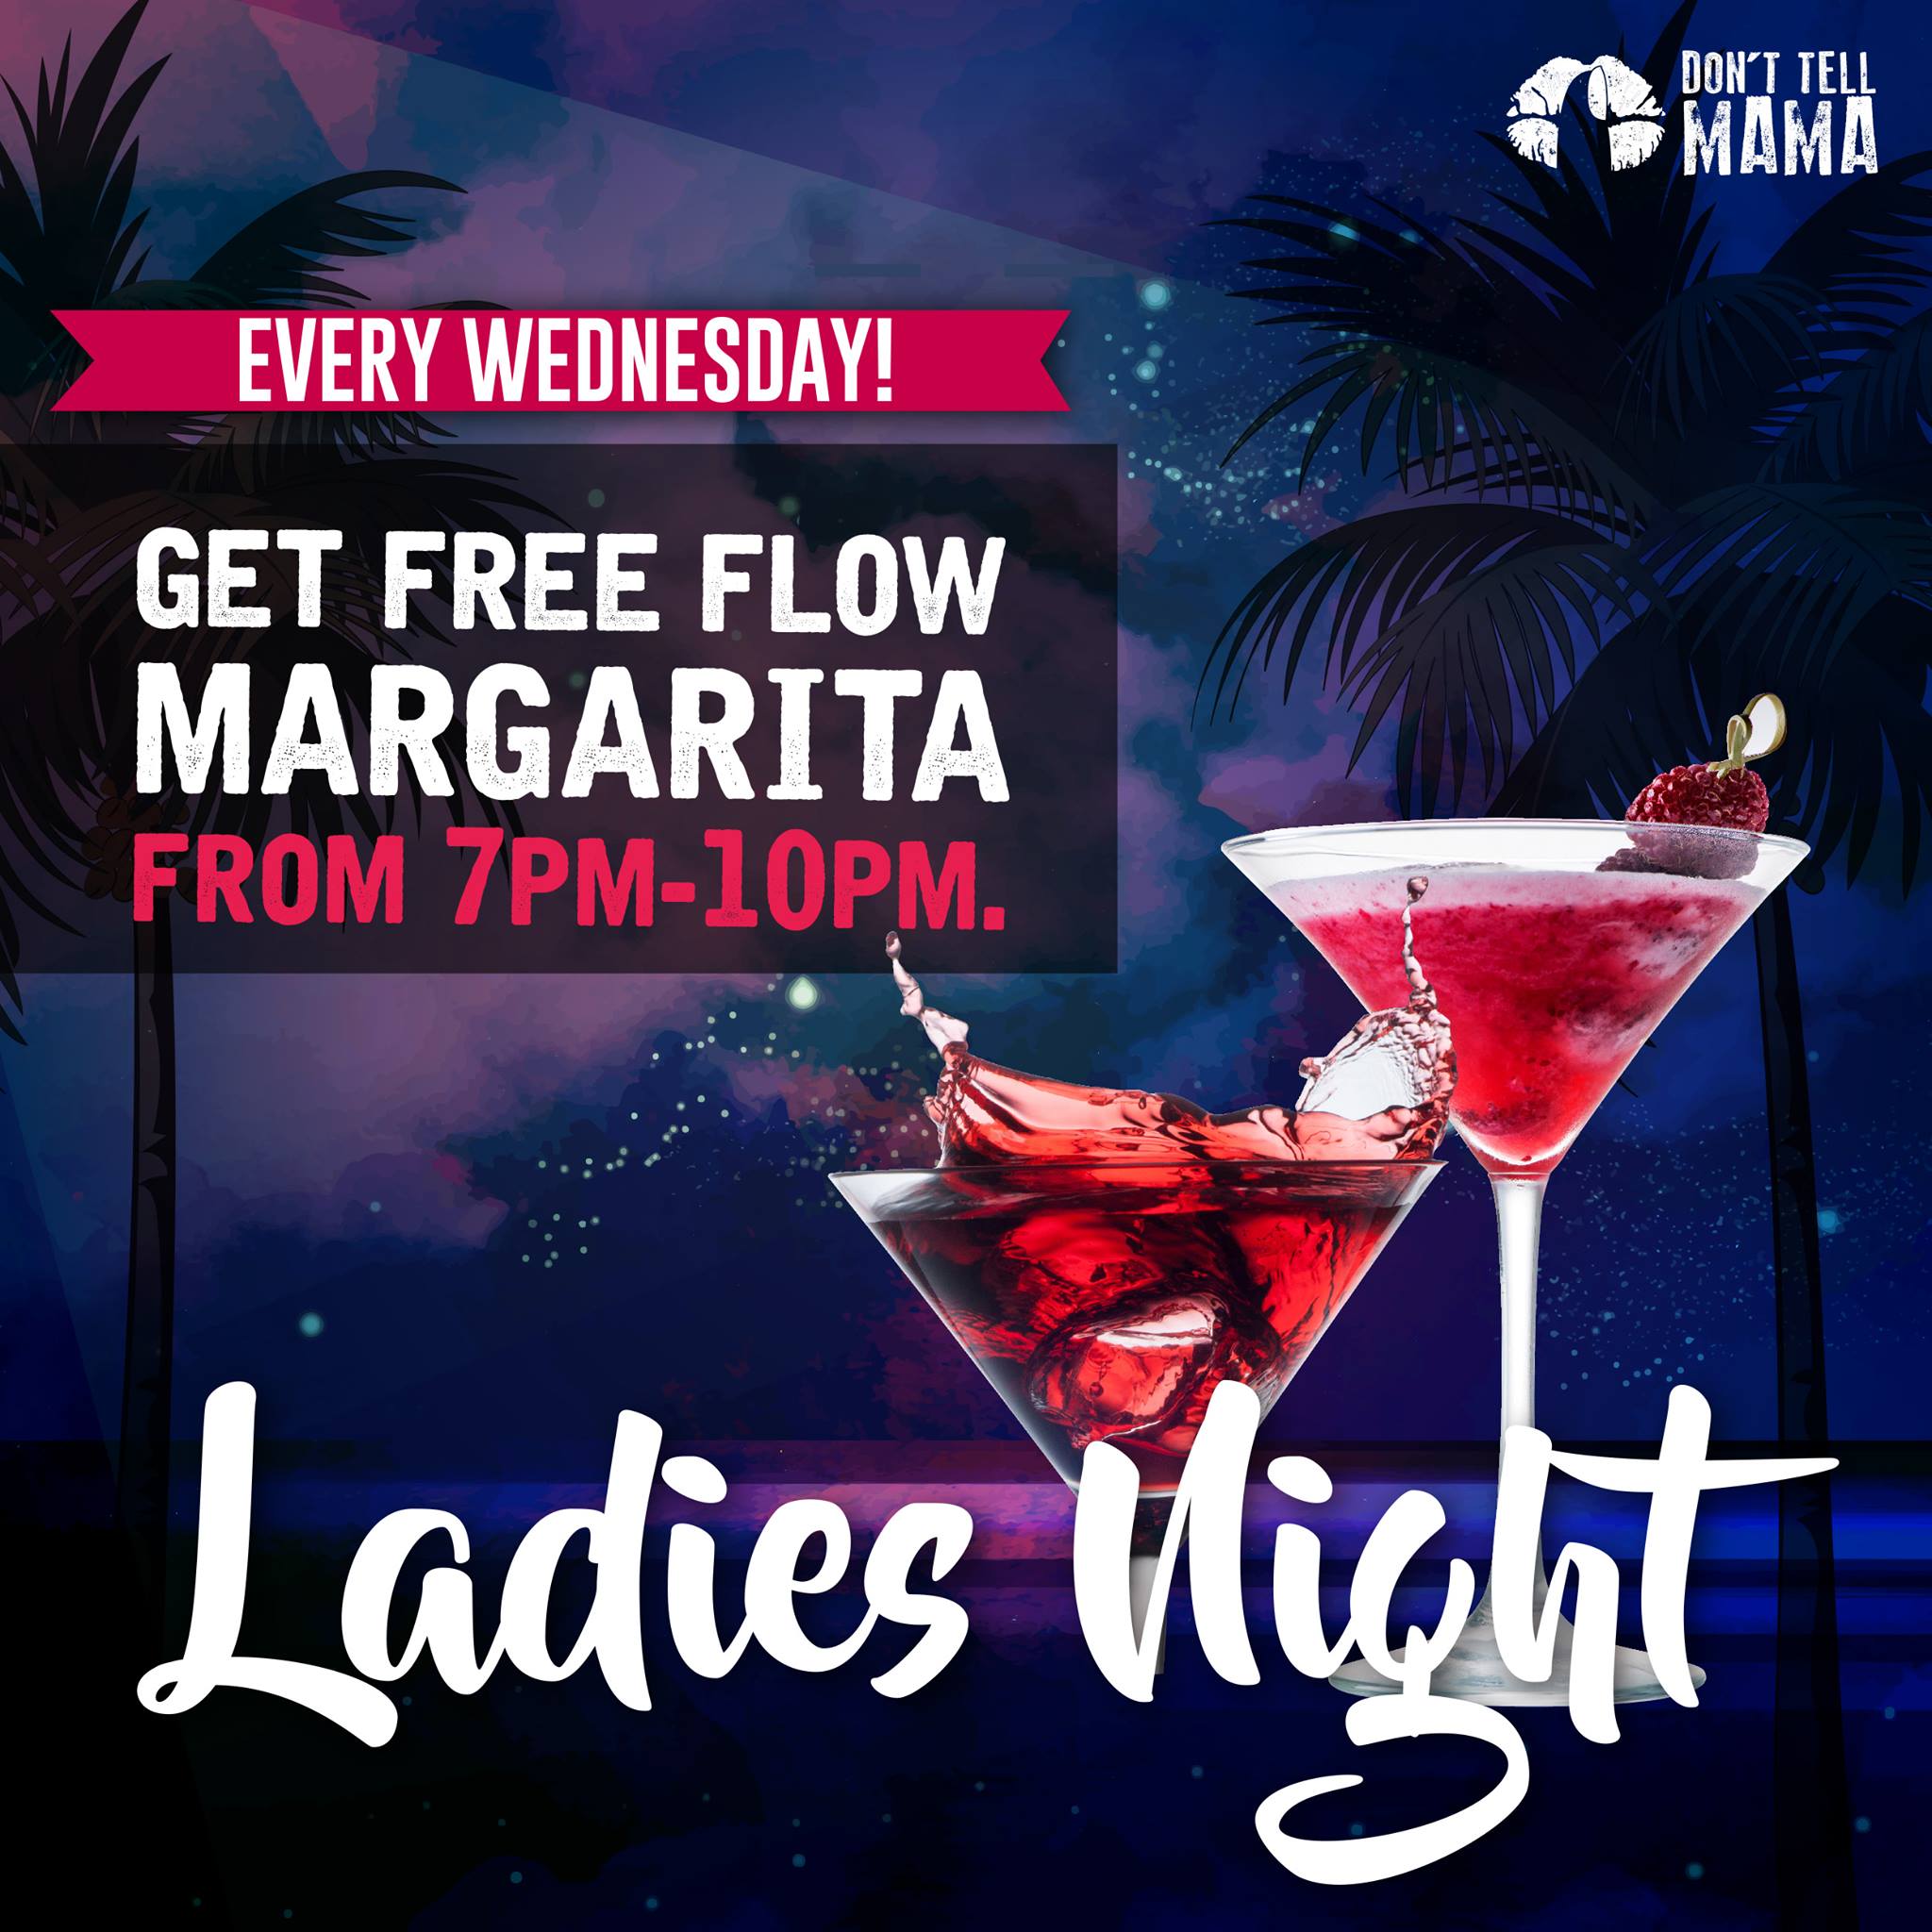 Don't Tell Mama Singapore FREE Flow Margarita Wed Ladies Night ...